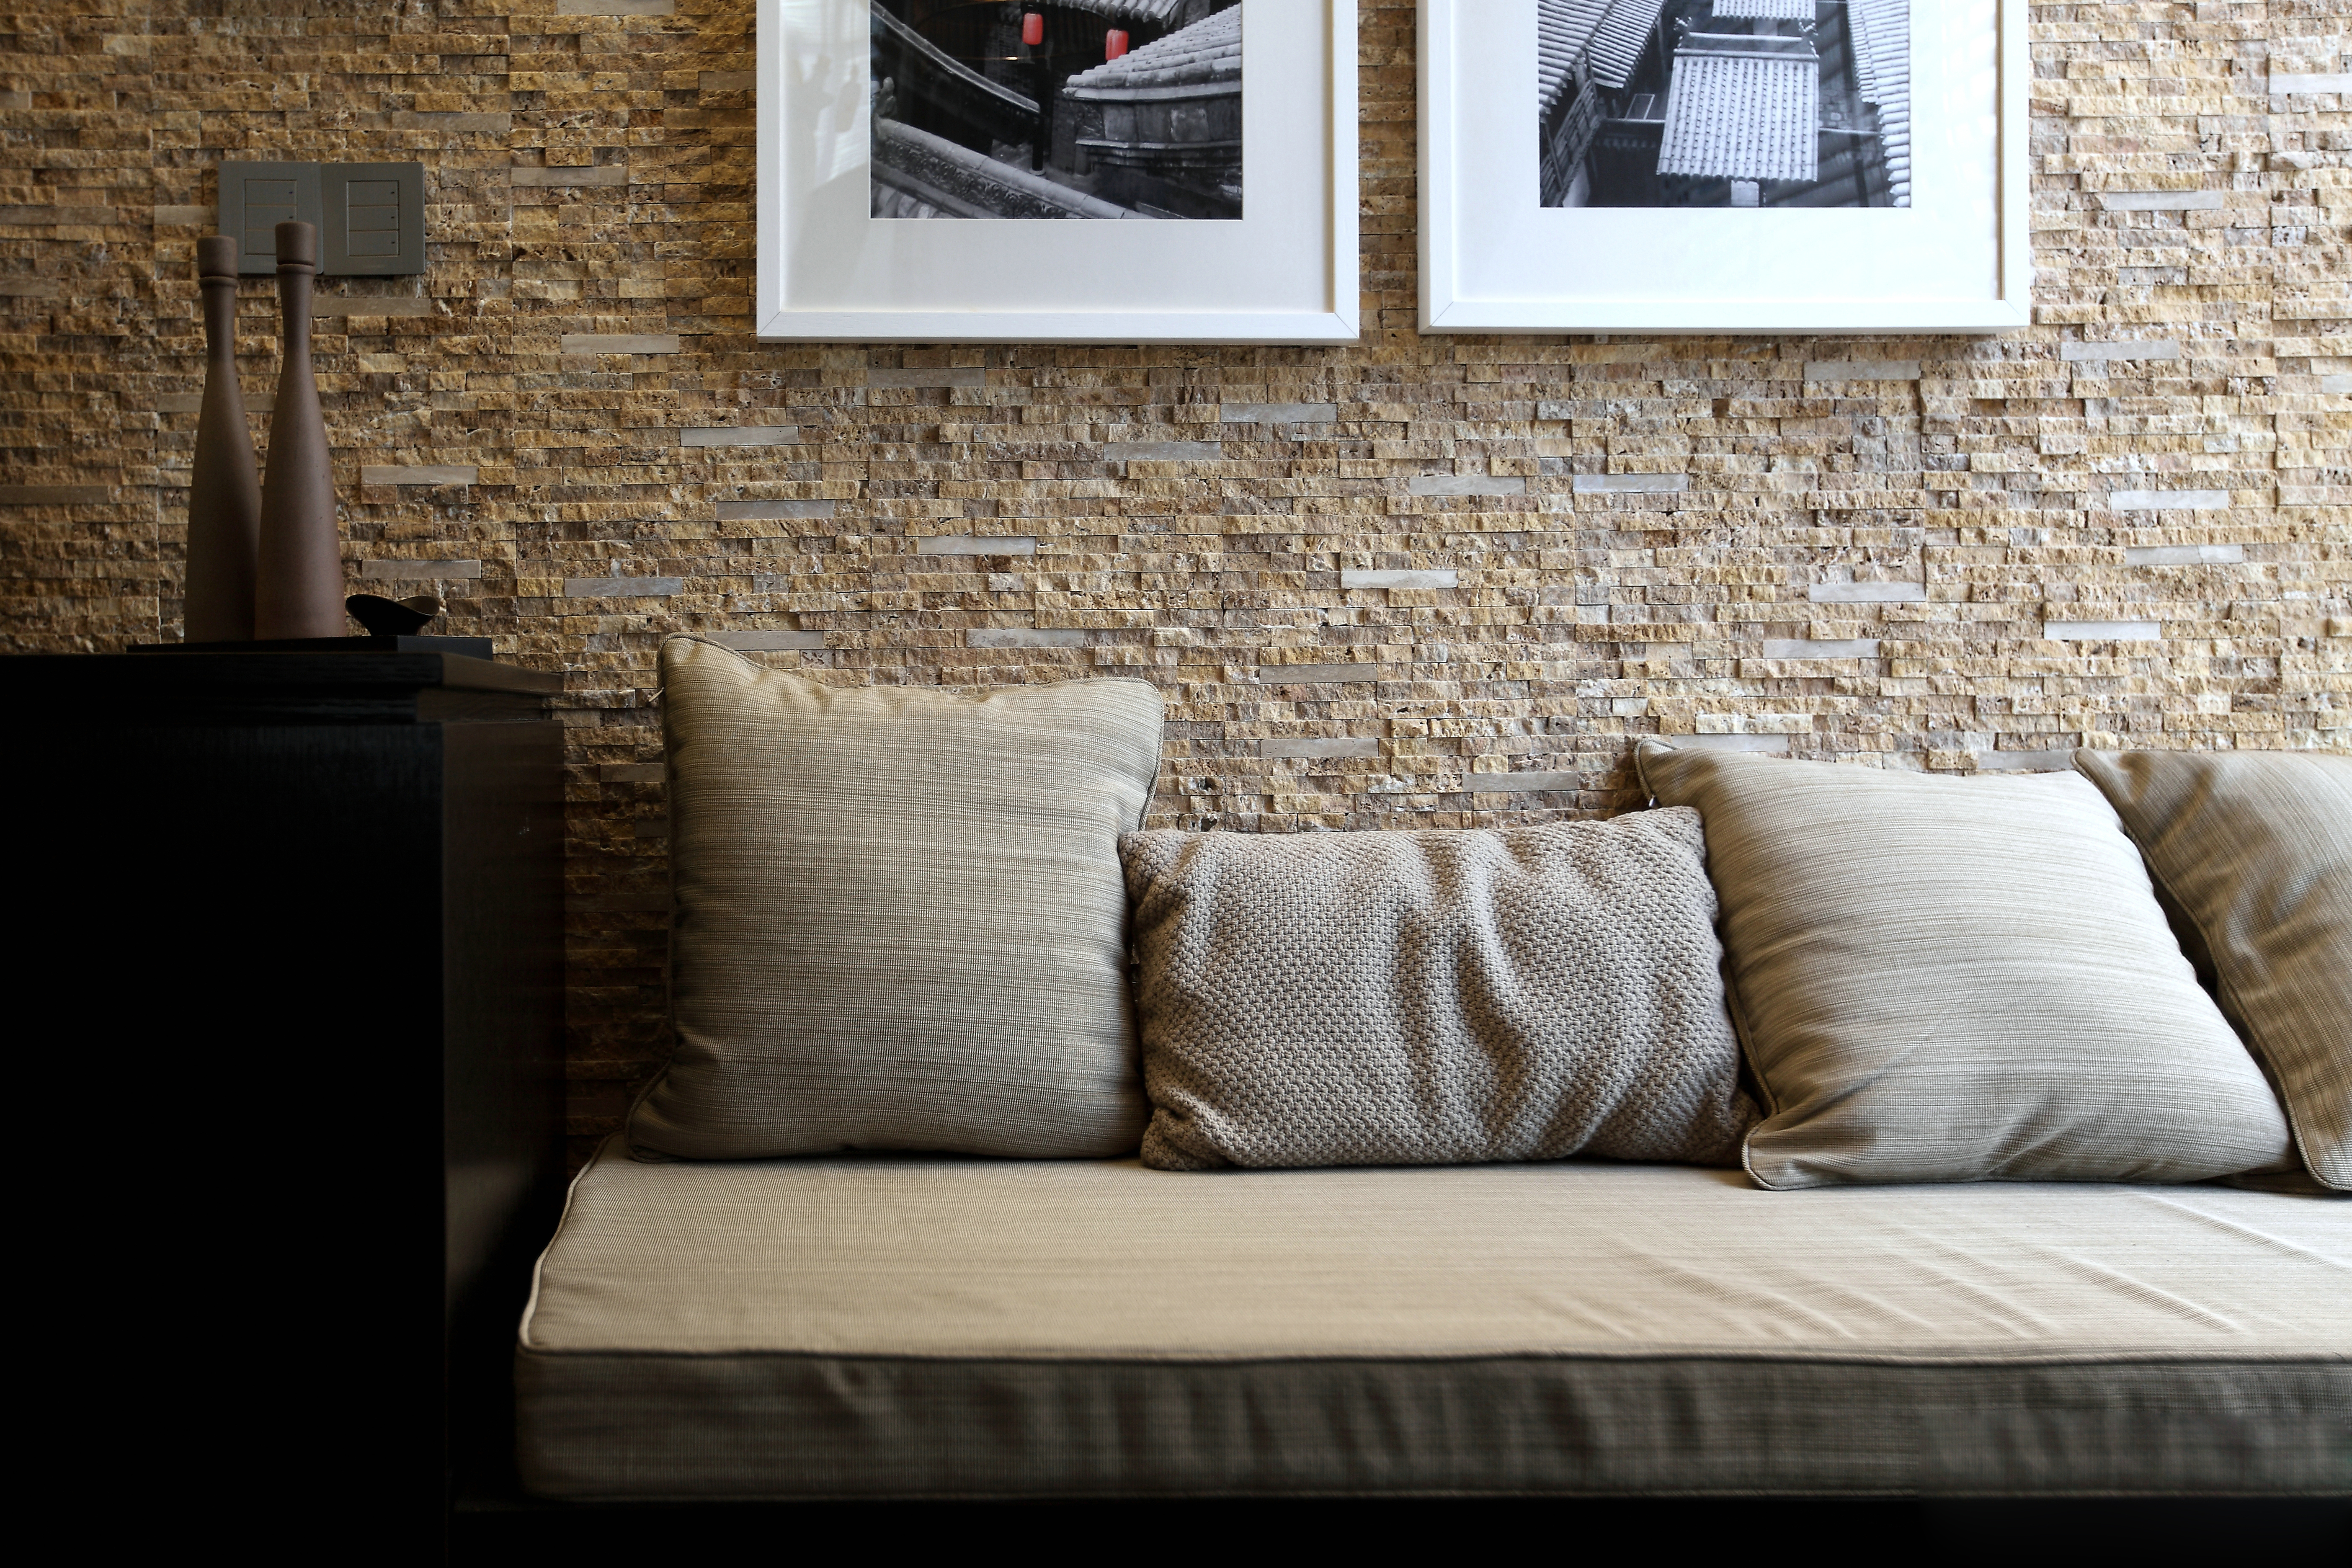 墙面很特别，搭配沙发颜色，给人一种处于自然界的舒适感。